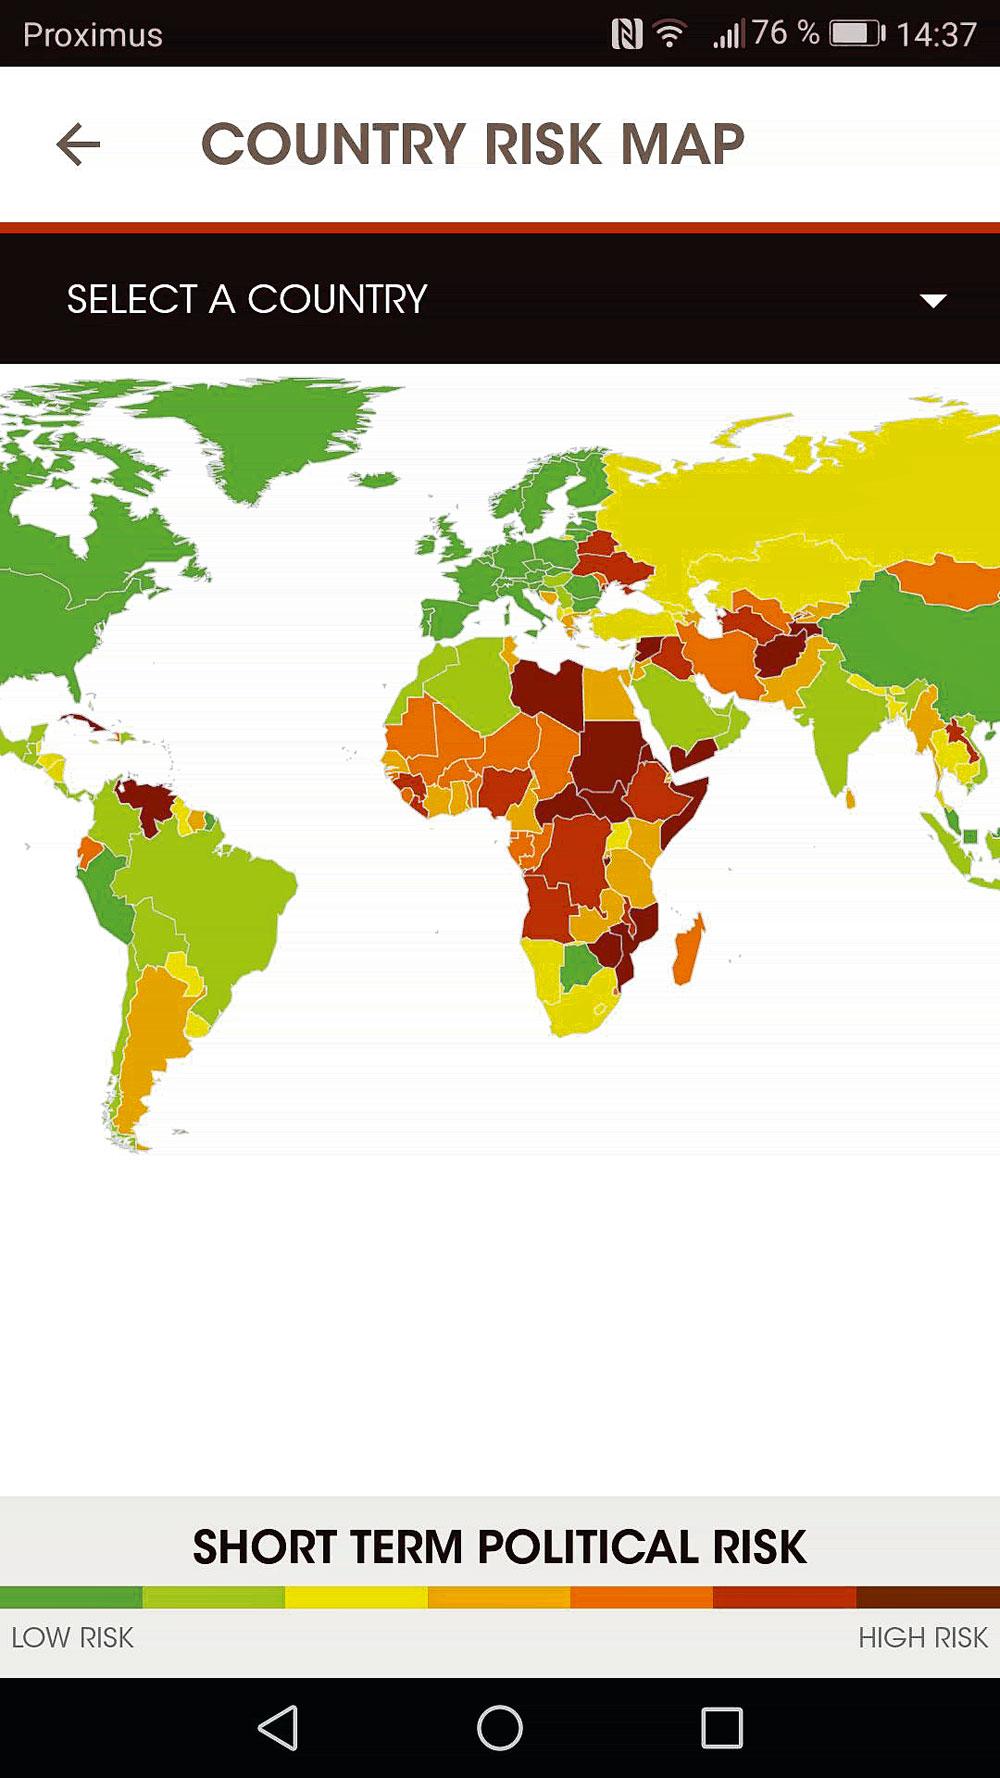 L'application s'ouvre sur une carte du monde, colorée en fonction du profil de risques de chaque pays.